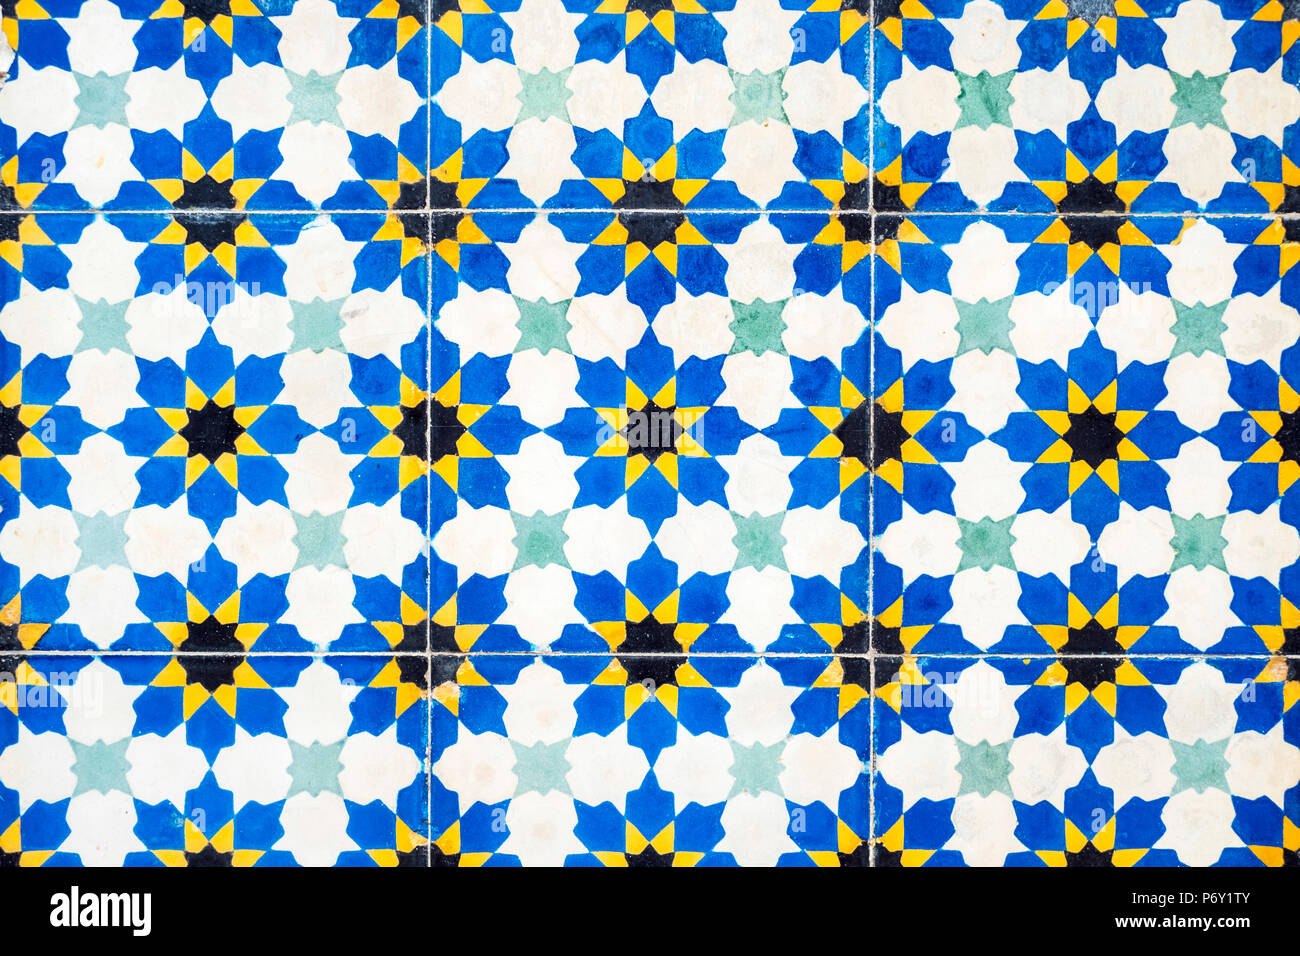 Le Maroc, Marrakech-Safi Marrakesh-Tensift-El Haouz (région), Marrakech. Les carreaux de mur de céramique colorée à l'Heritage Museum, logé dans un bâtiment historique restauré riad. Banque D'Images